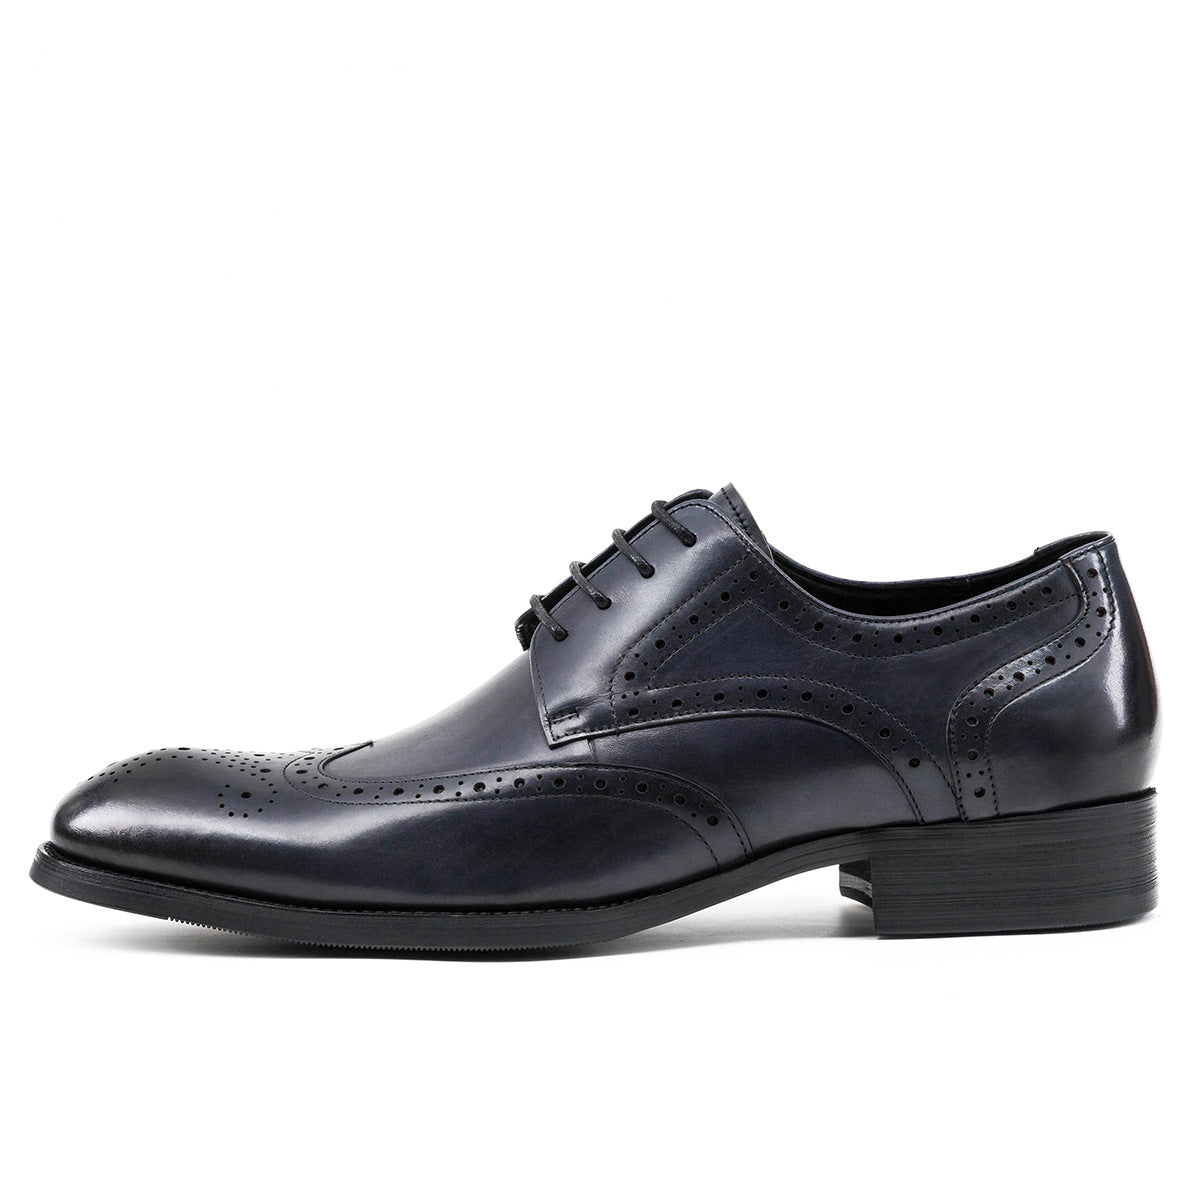 Klassisch-elegante Brogue-Schuhe aus britischem geschnitztem Leder für Herren